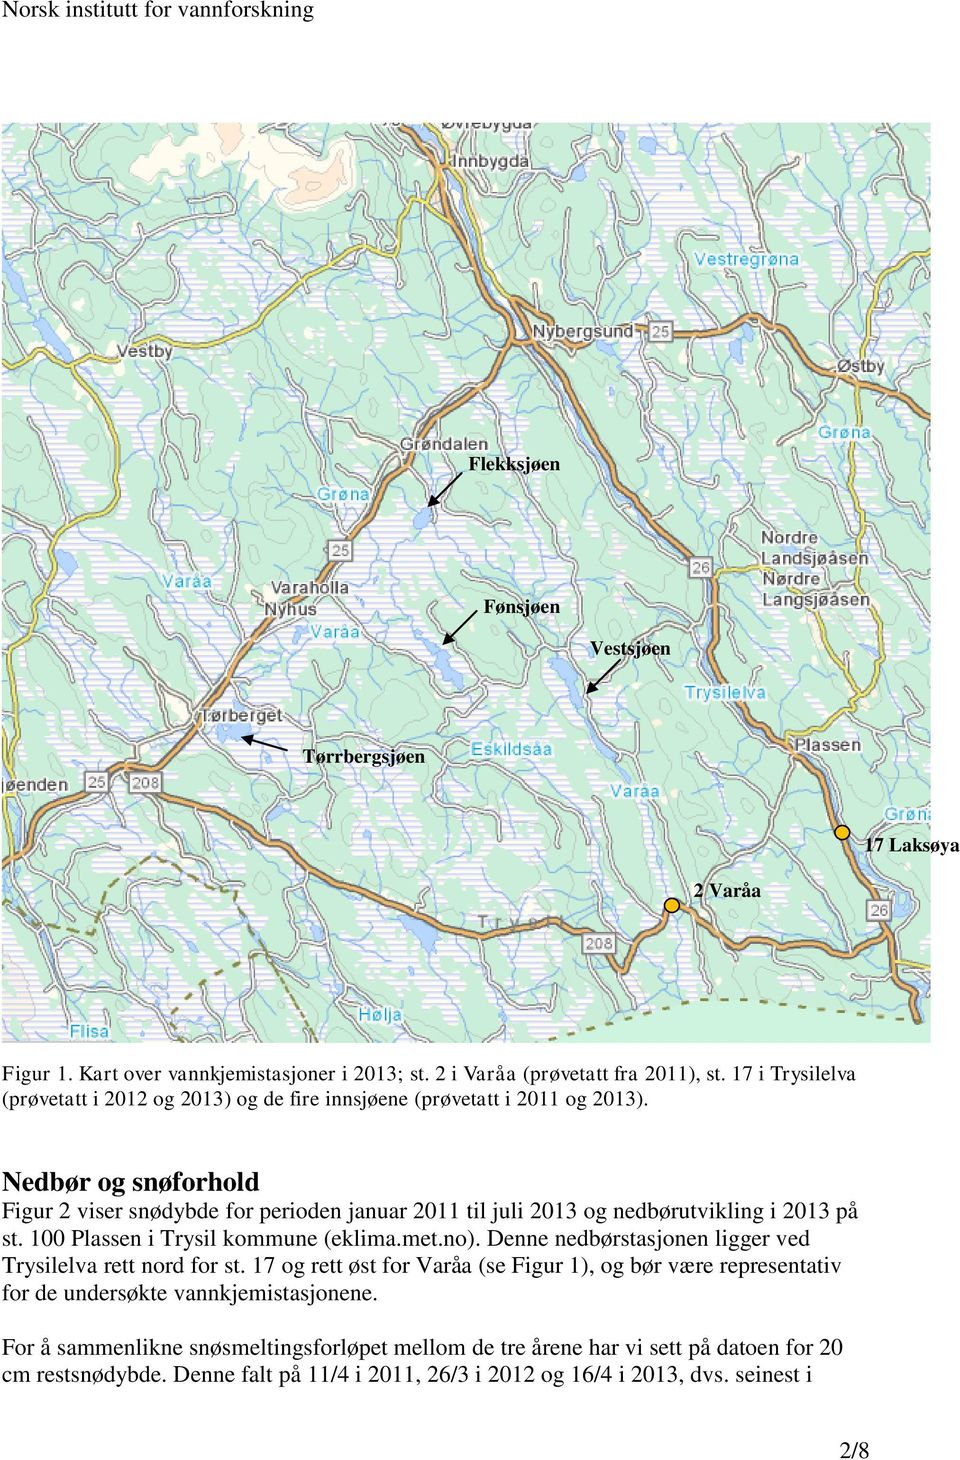 Nedbør og snøforhold Figur 2 viser snødybde for perioden januar 2011 til juli 2013 og nedbørutvikling i 2013 på st. 100 Plassen i Trysil kommune (eklima.met.no).